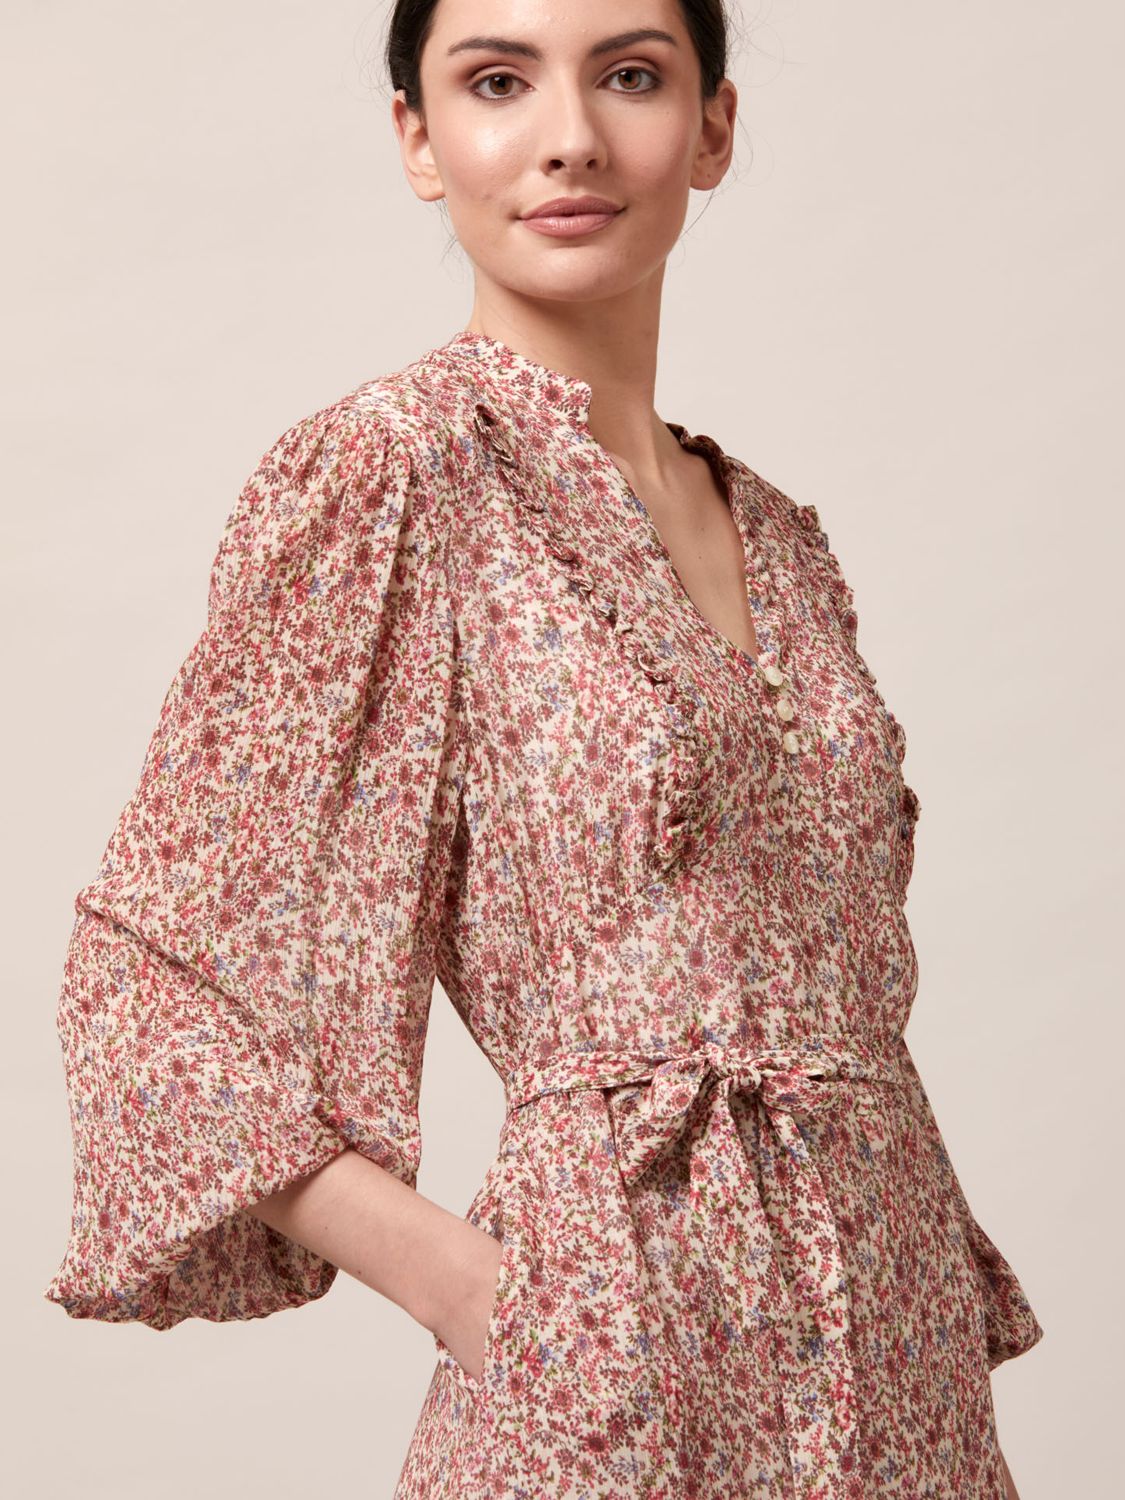 Helen McAlinden Vintage Floral Soft Belted Midi Dress, Blush/Multi, 8